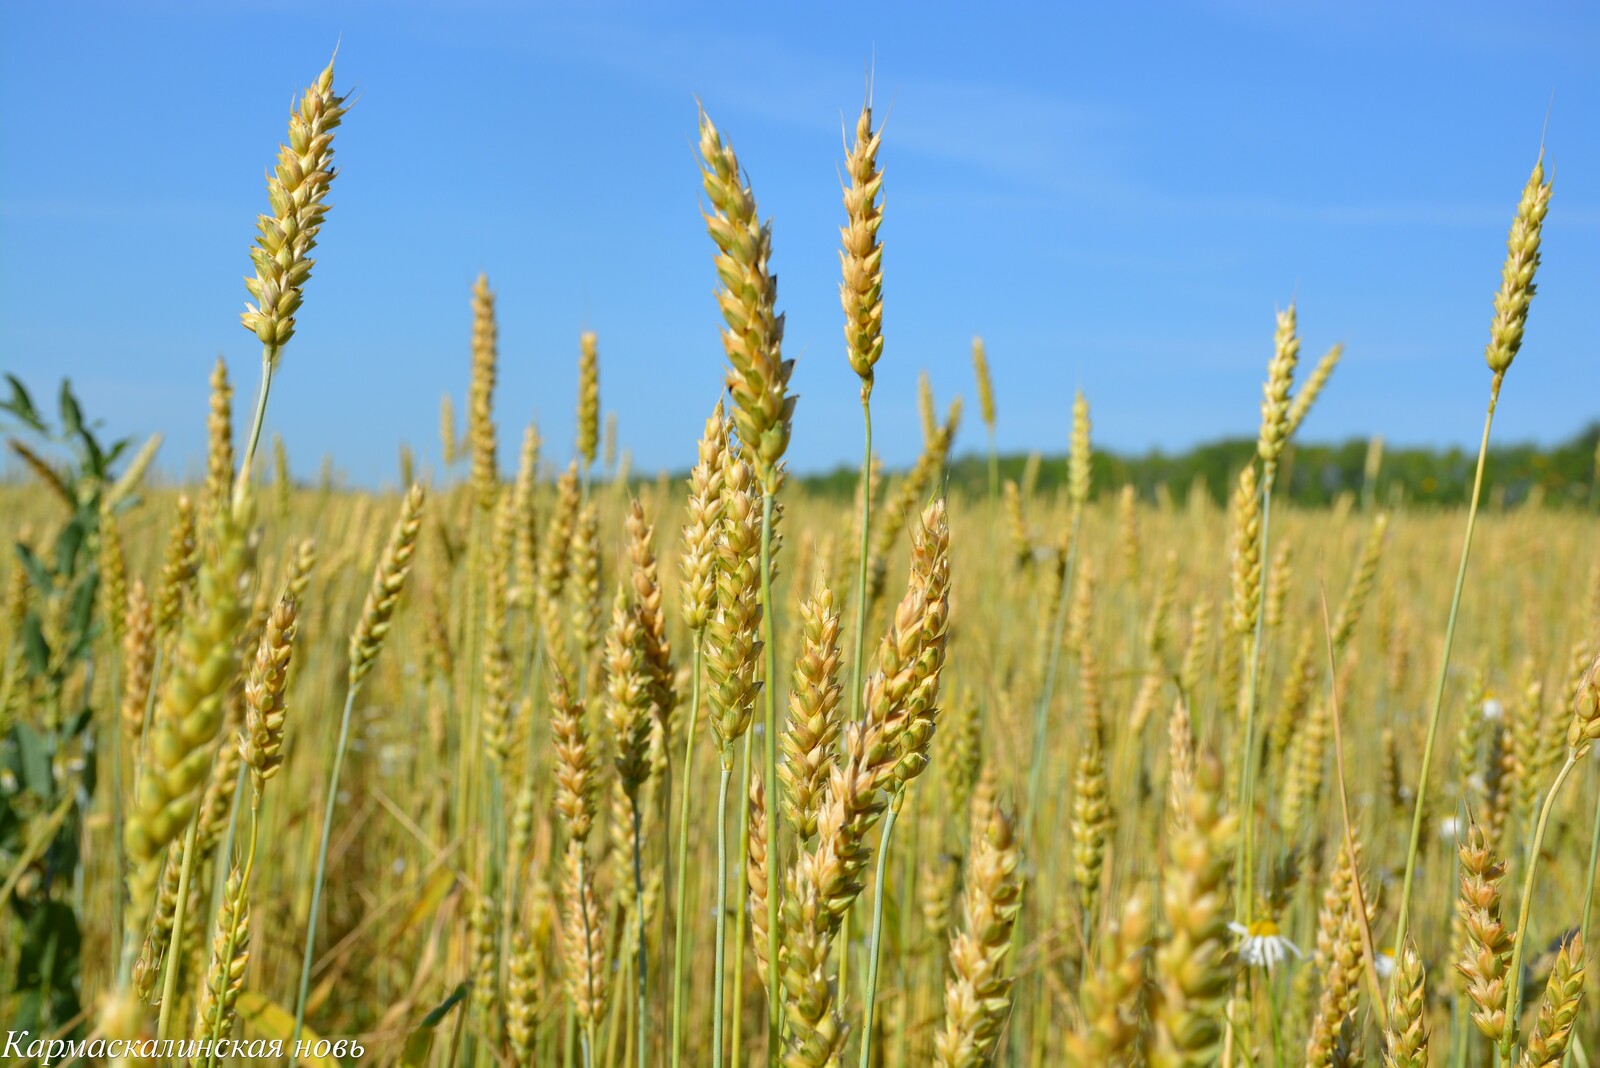 В Башкирии валовый сбор зерна превысил первый миллион тонн Валовый сбор зерна в Башкортостане превысил 1,2 млн тонн